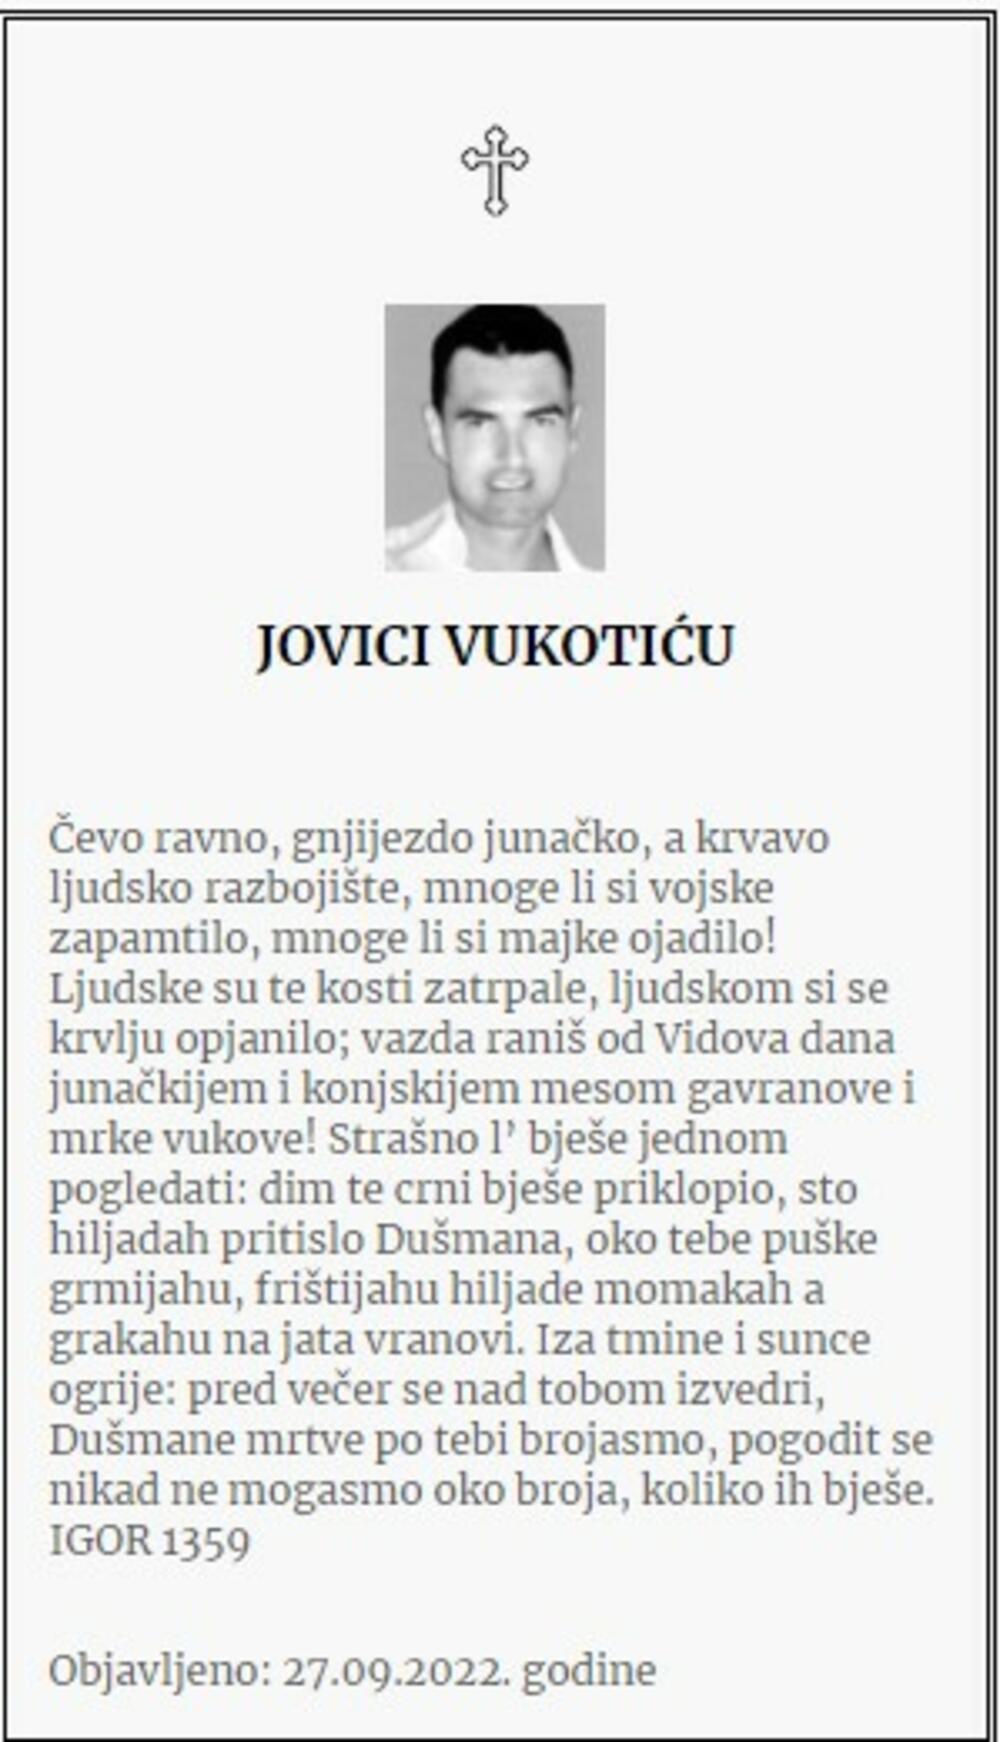 Jovan Vukotić, Jovica Vukotić, Jovan Jovica Vukotić